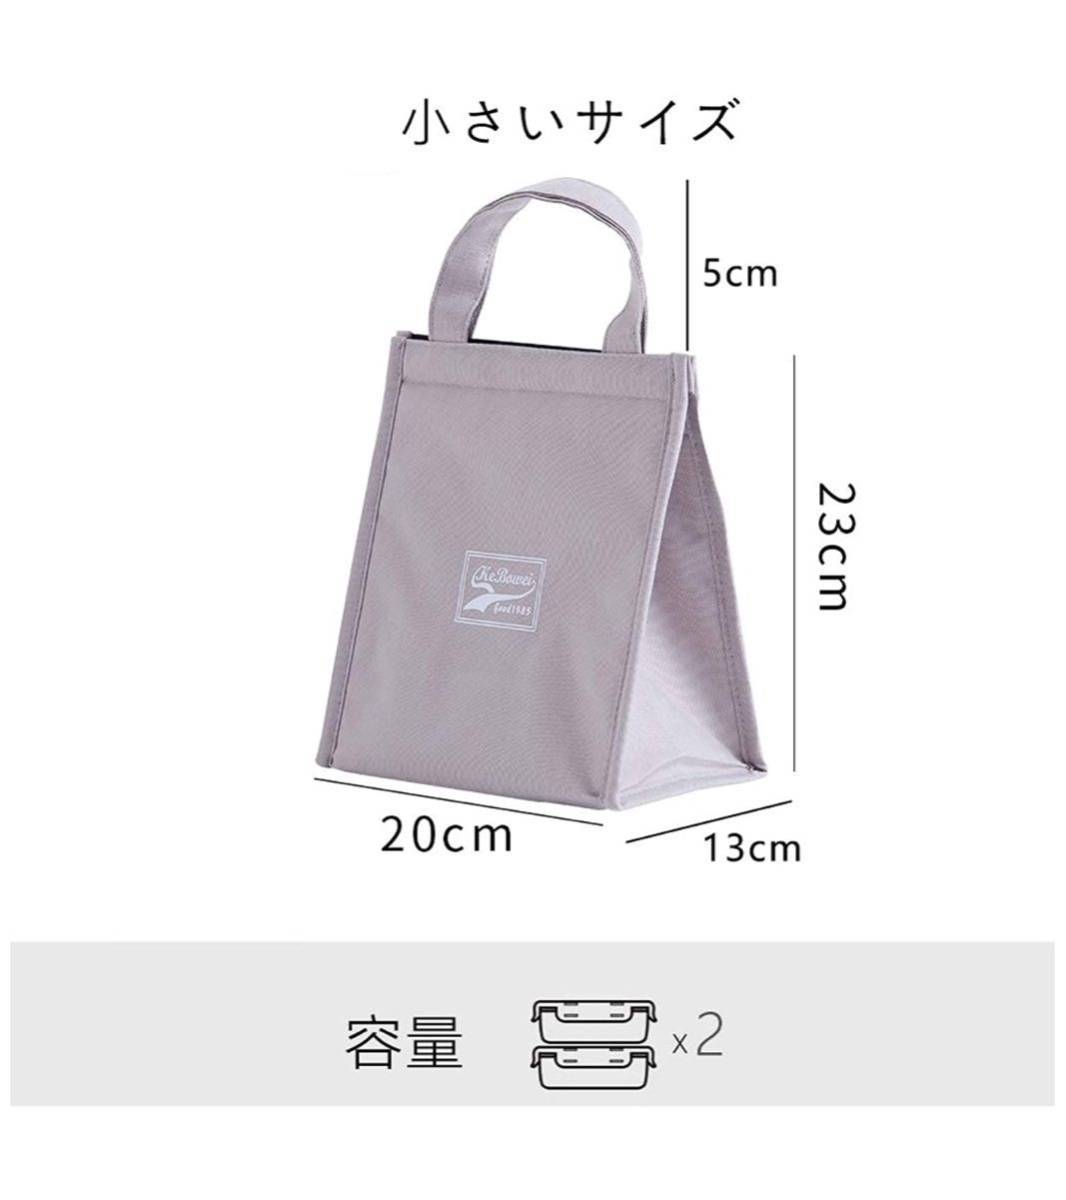 保温 保冷 バッグ 折りたたみ 袋 トートバッグ 防水 大容量 便利 軽量 通勤 通学用 男女兼用 2個セット（大+小）